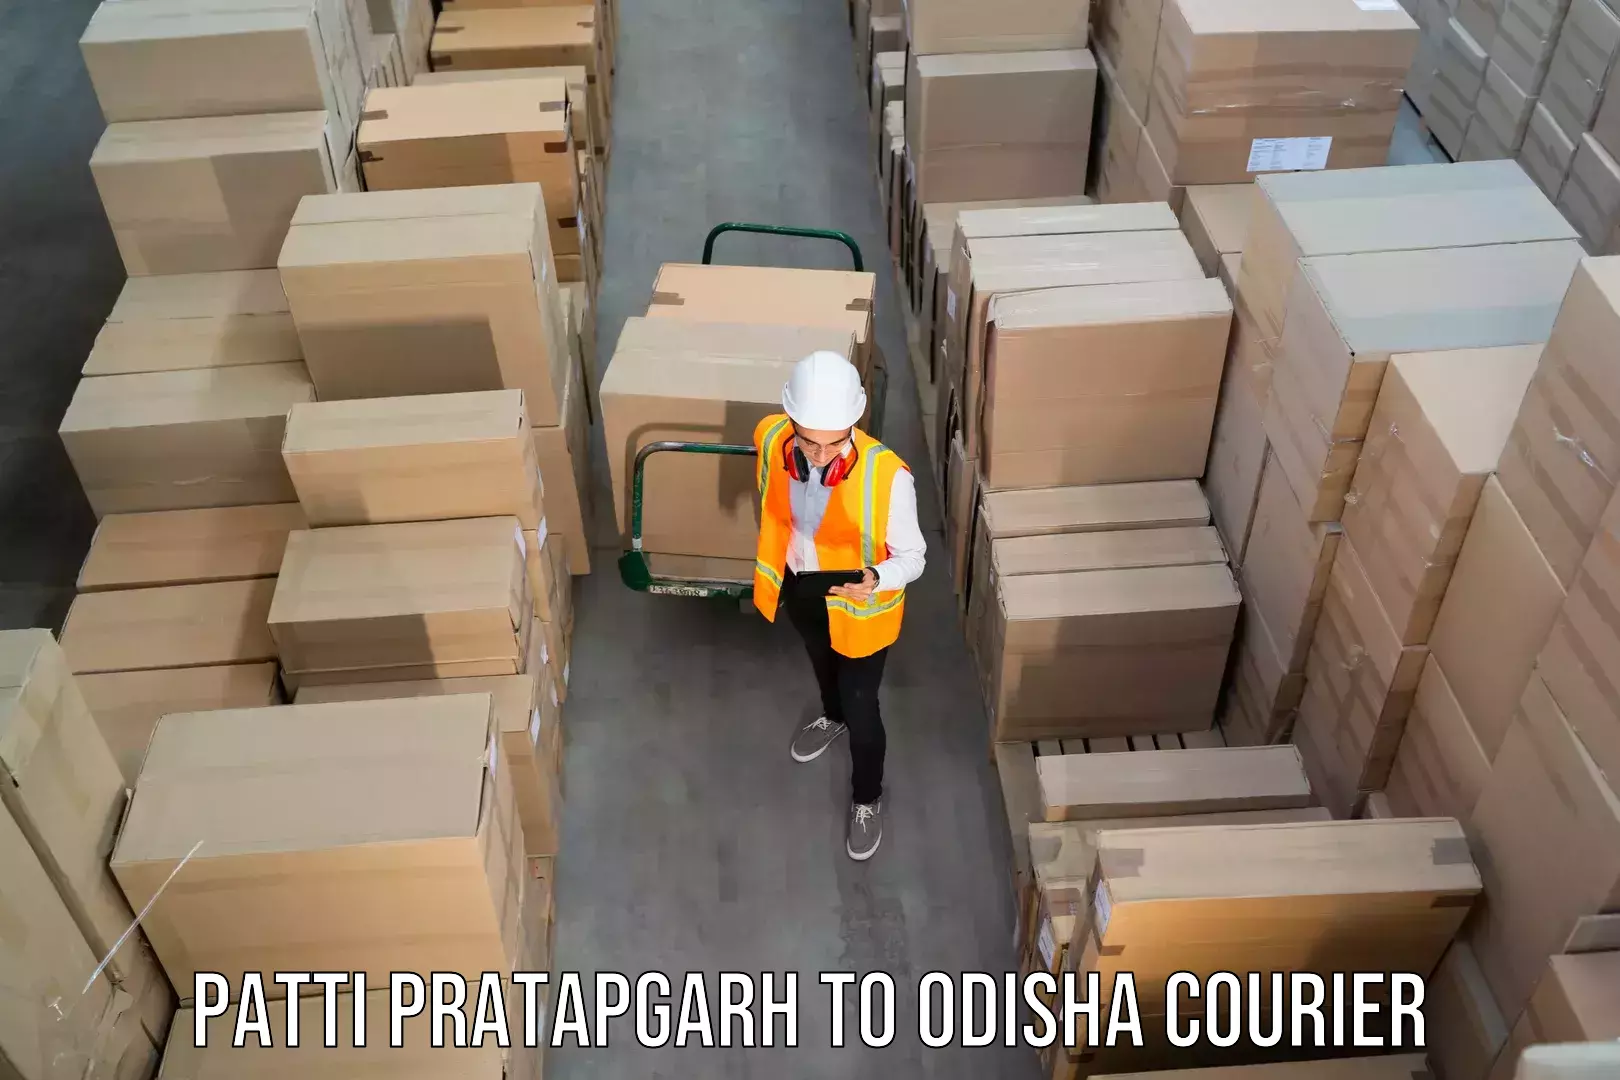 Fast delivery service Patti Pratapgarh to Tangi